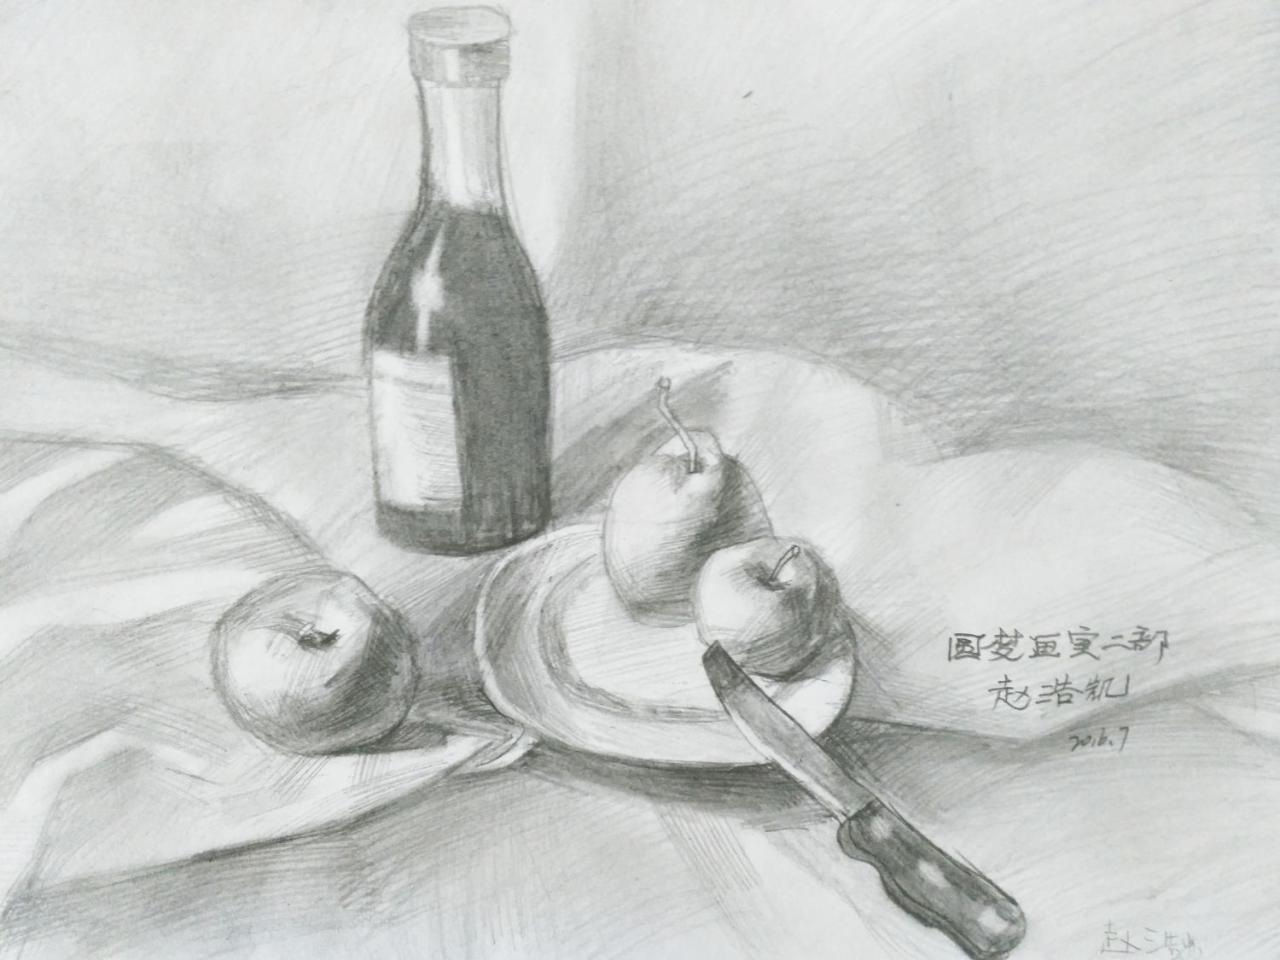 酒瓶、刀具、盘子、苹果、梨 静物素描 赵浩凯画